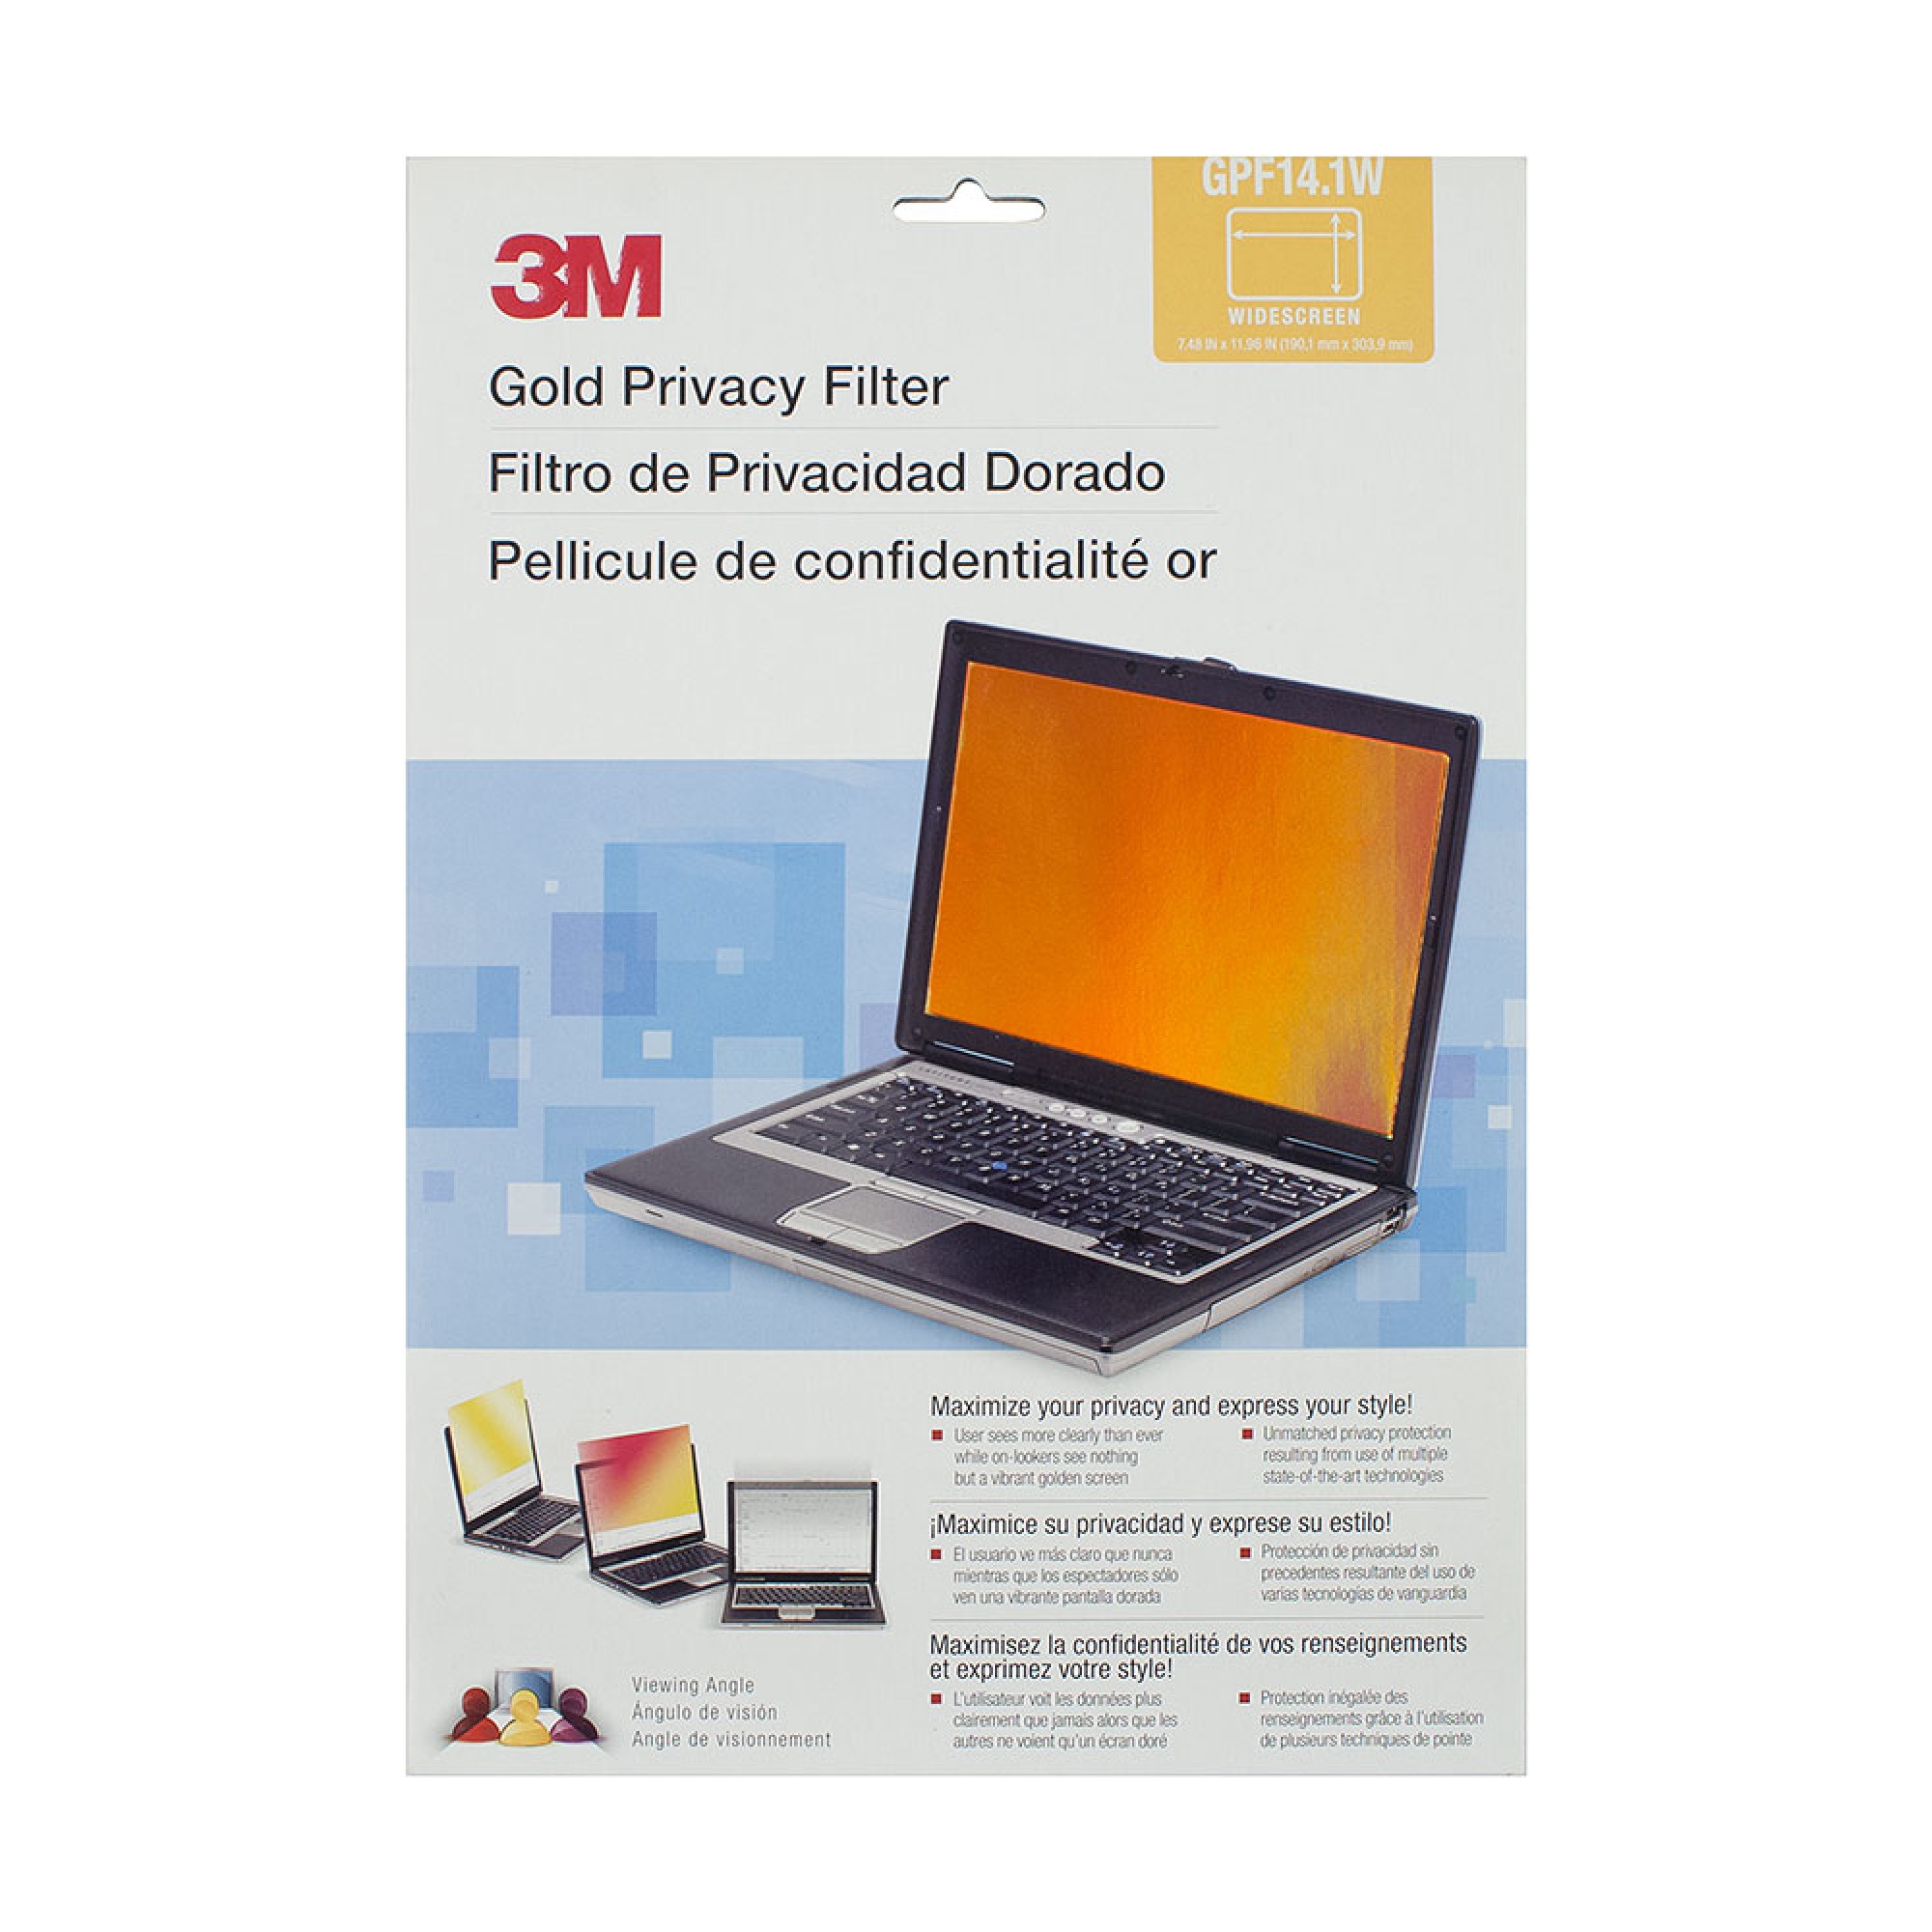 Экран защиты информации для монитора OEM GPF14.1W, 14.1